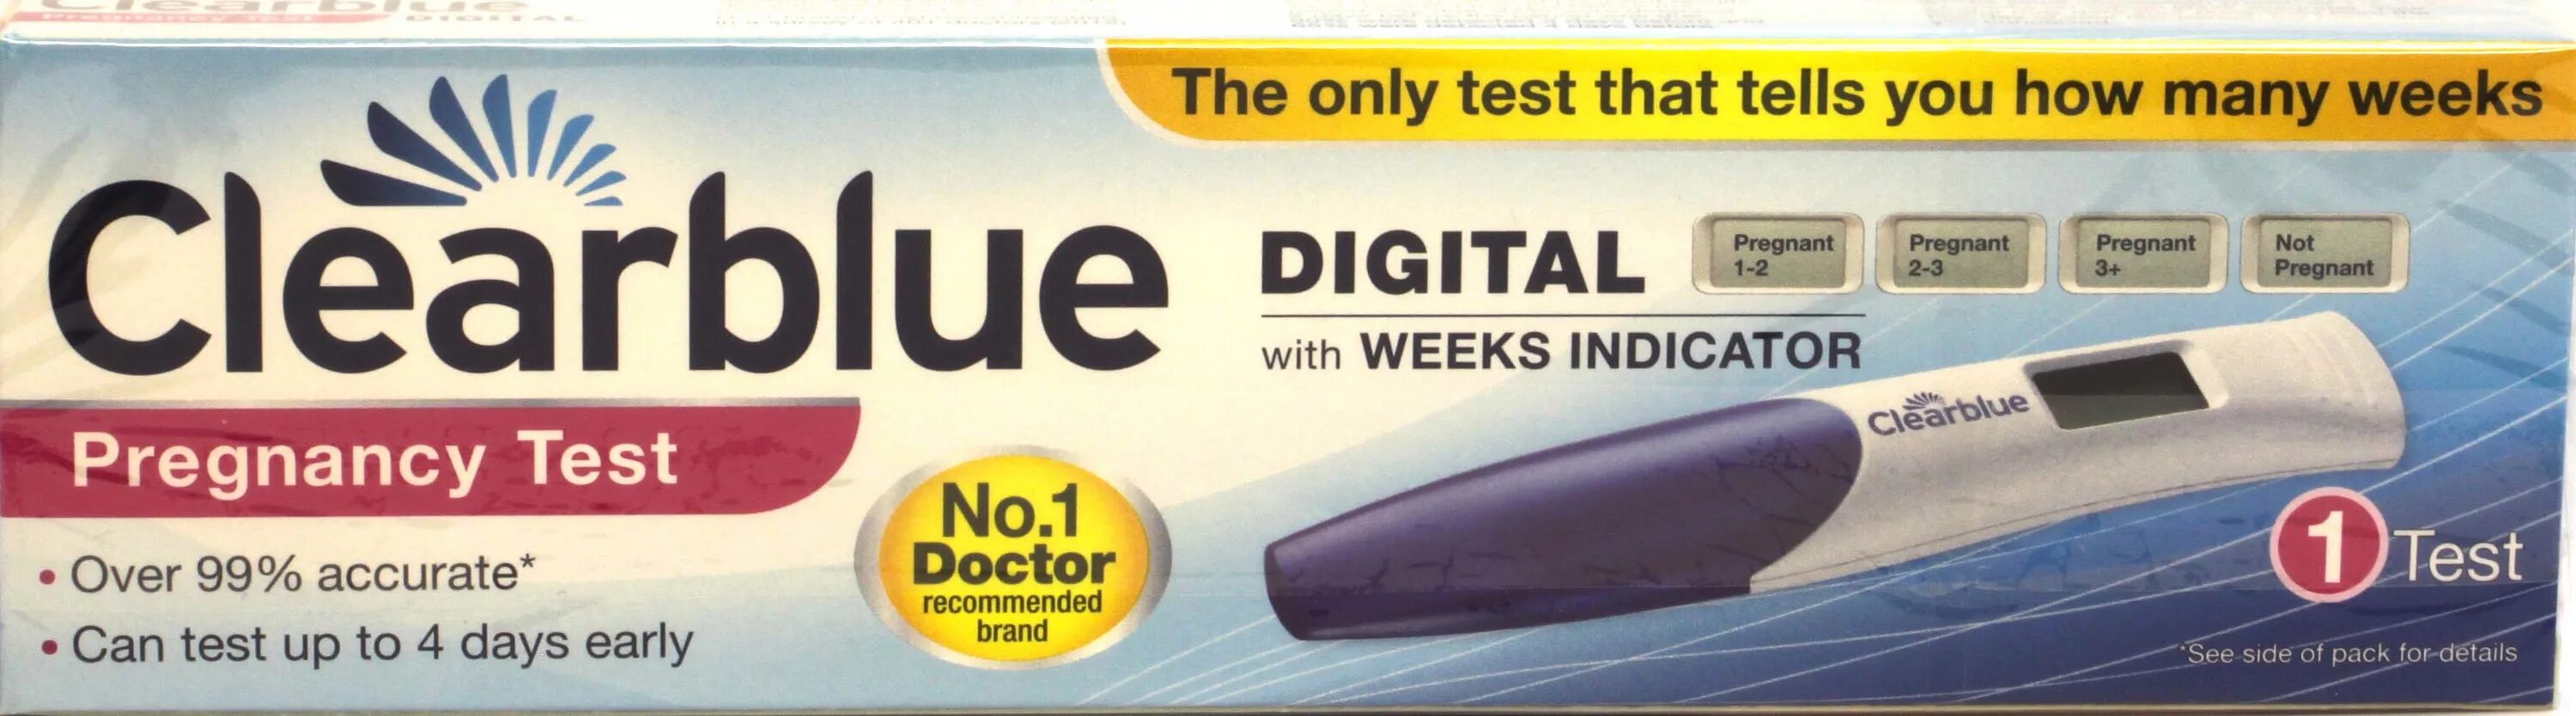 Clearblue digital для определения срока беременности. Клиаблу тест на беременность. Цифровой тест на беременность Clearblue. Тест Clearblue Plus на беременность. Тест на беременность Clearblue цифровой с индикатором срока.